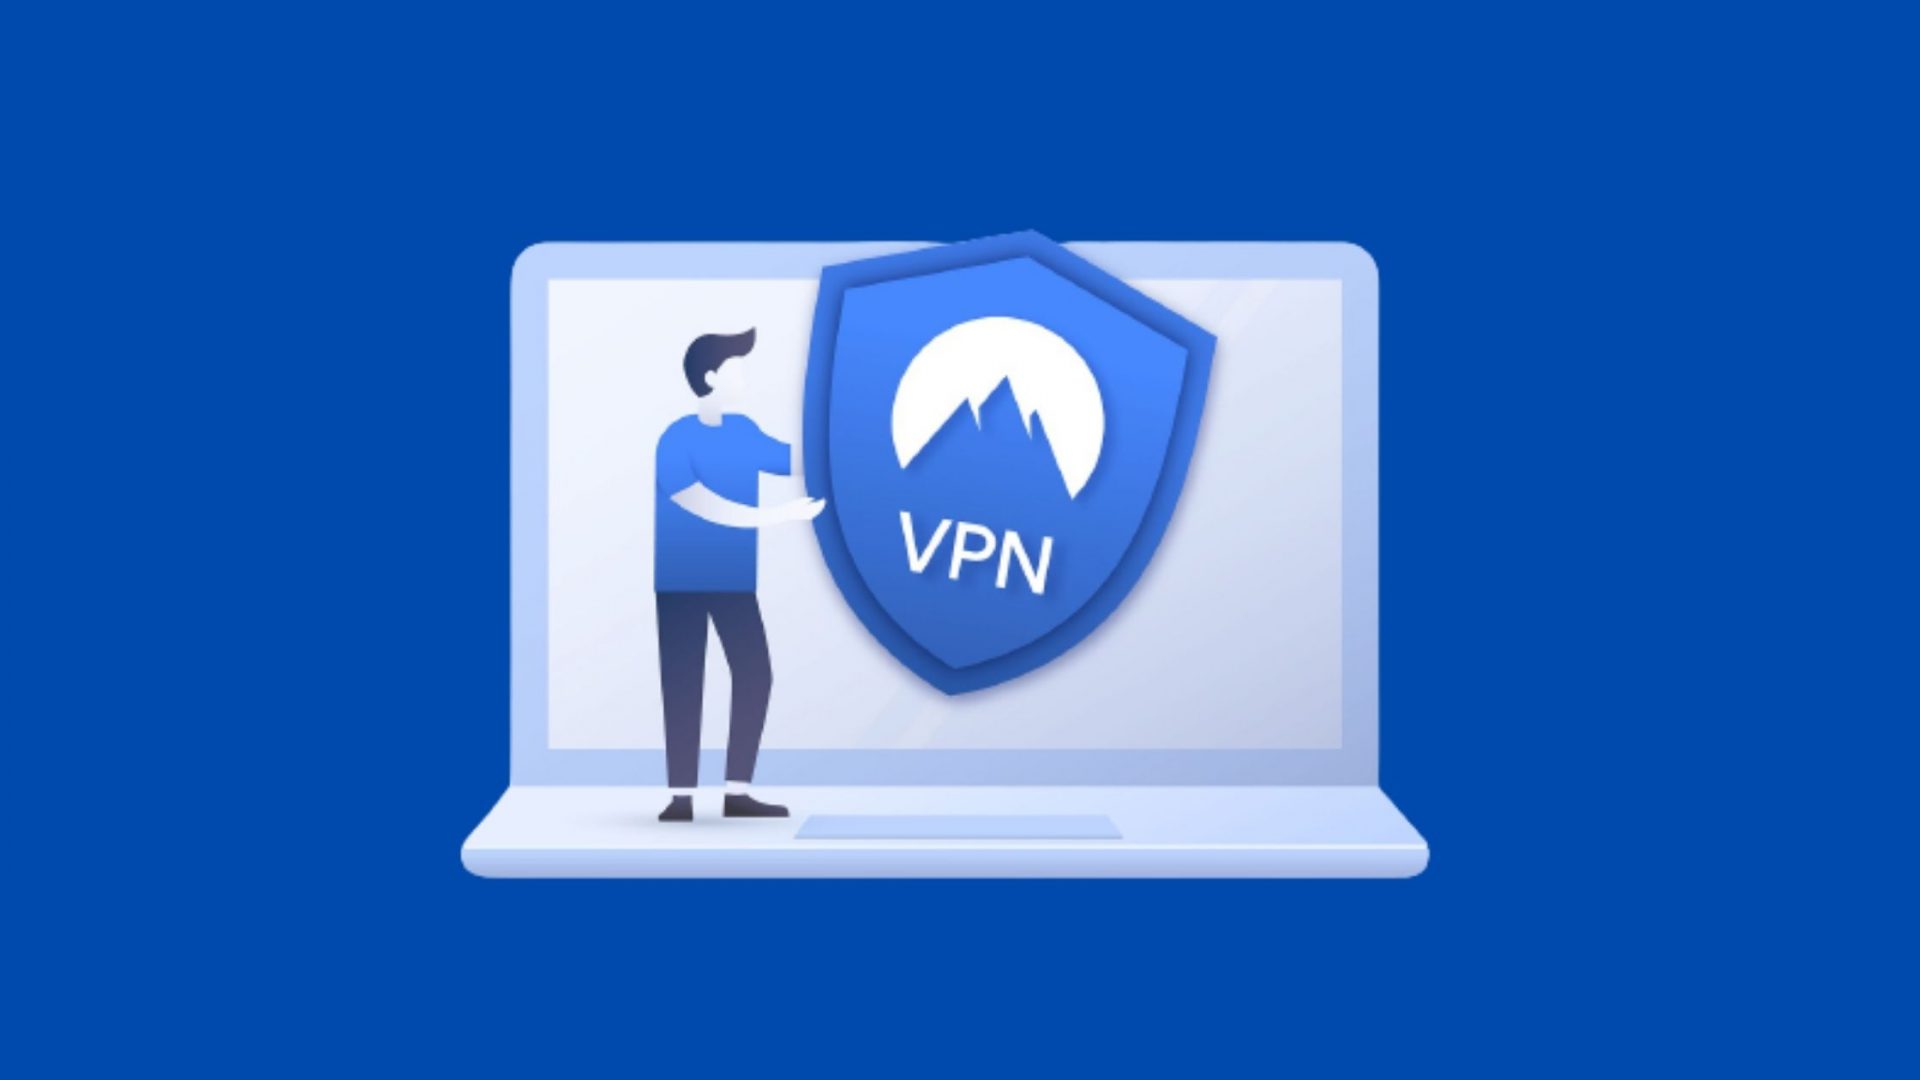 Best Free VPN for Windows in 2021